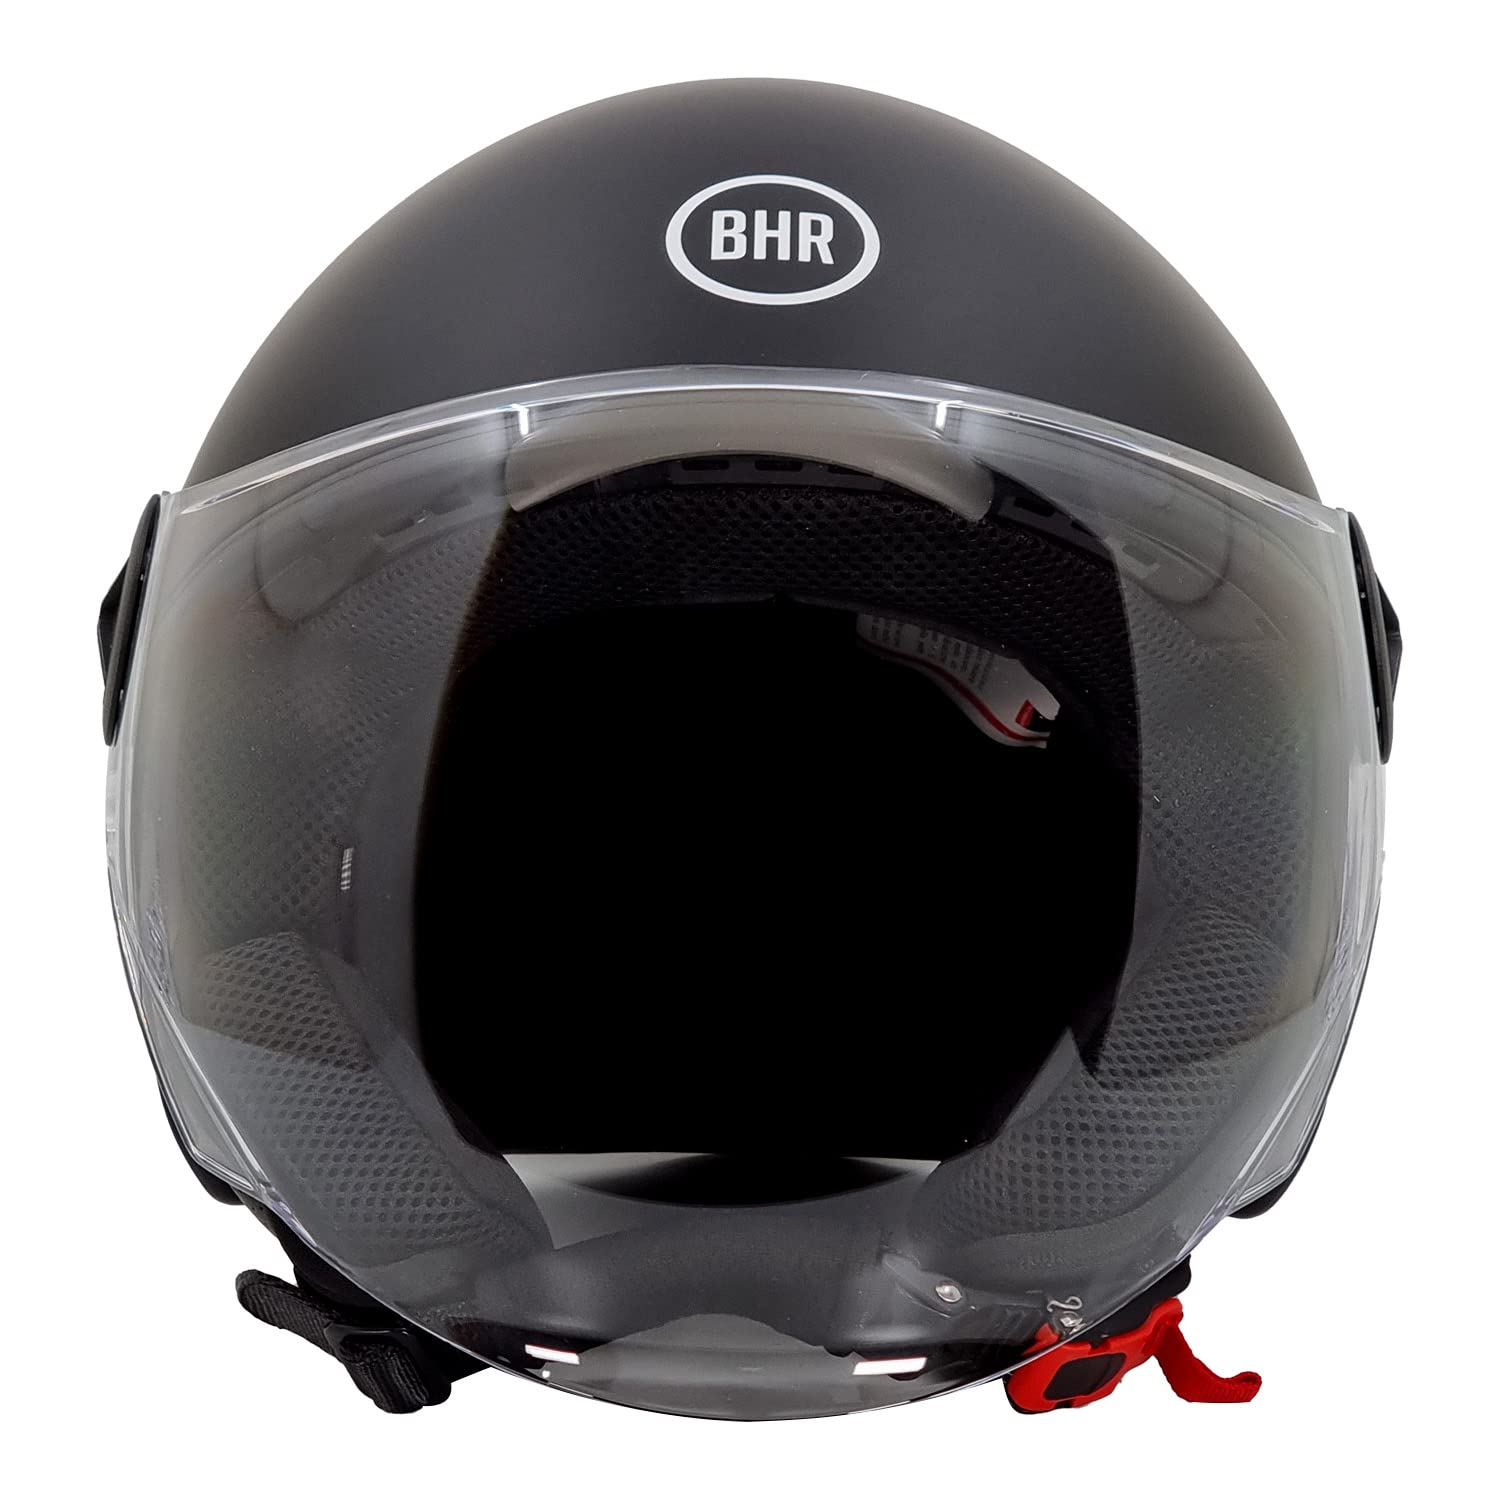 BHR Helm Demi-Jet 832 MINIMAL, Scooter Helm Zulassung ECE 22.06 Leicht und kompakt, ideal für die Stadt und unter der Sitzbank, Mattschwarz, L von BHR